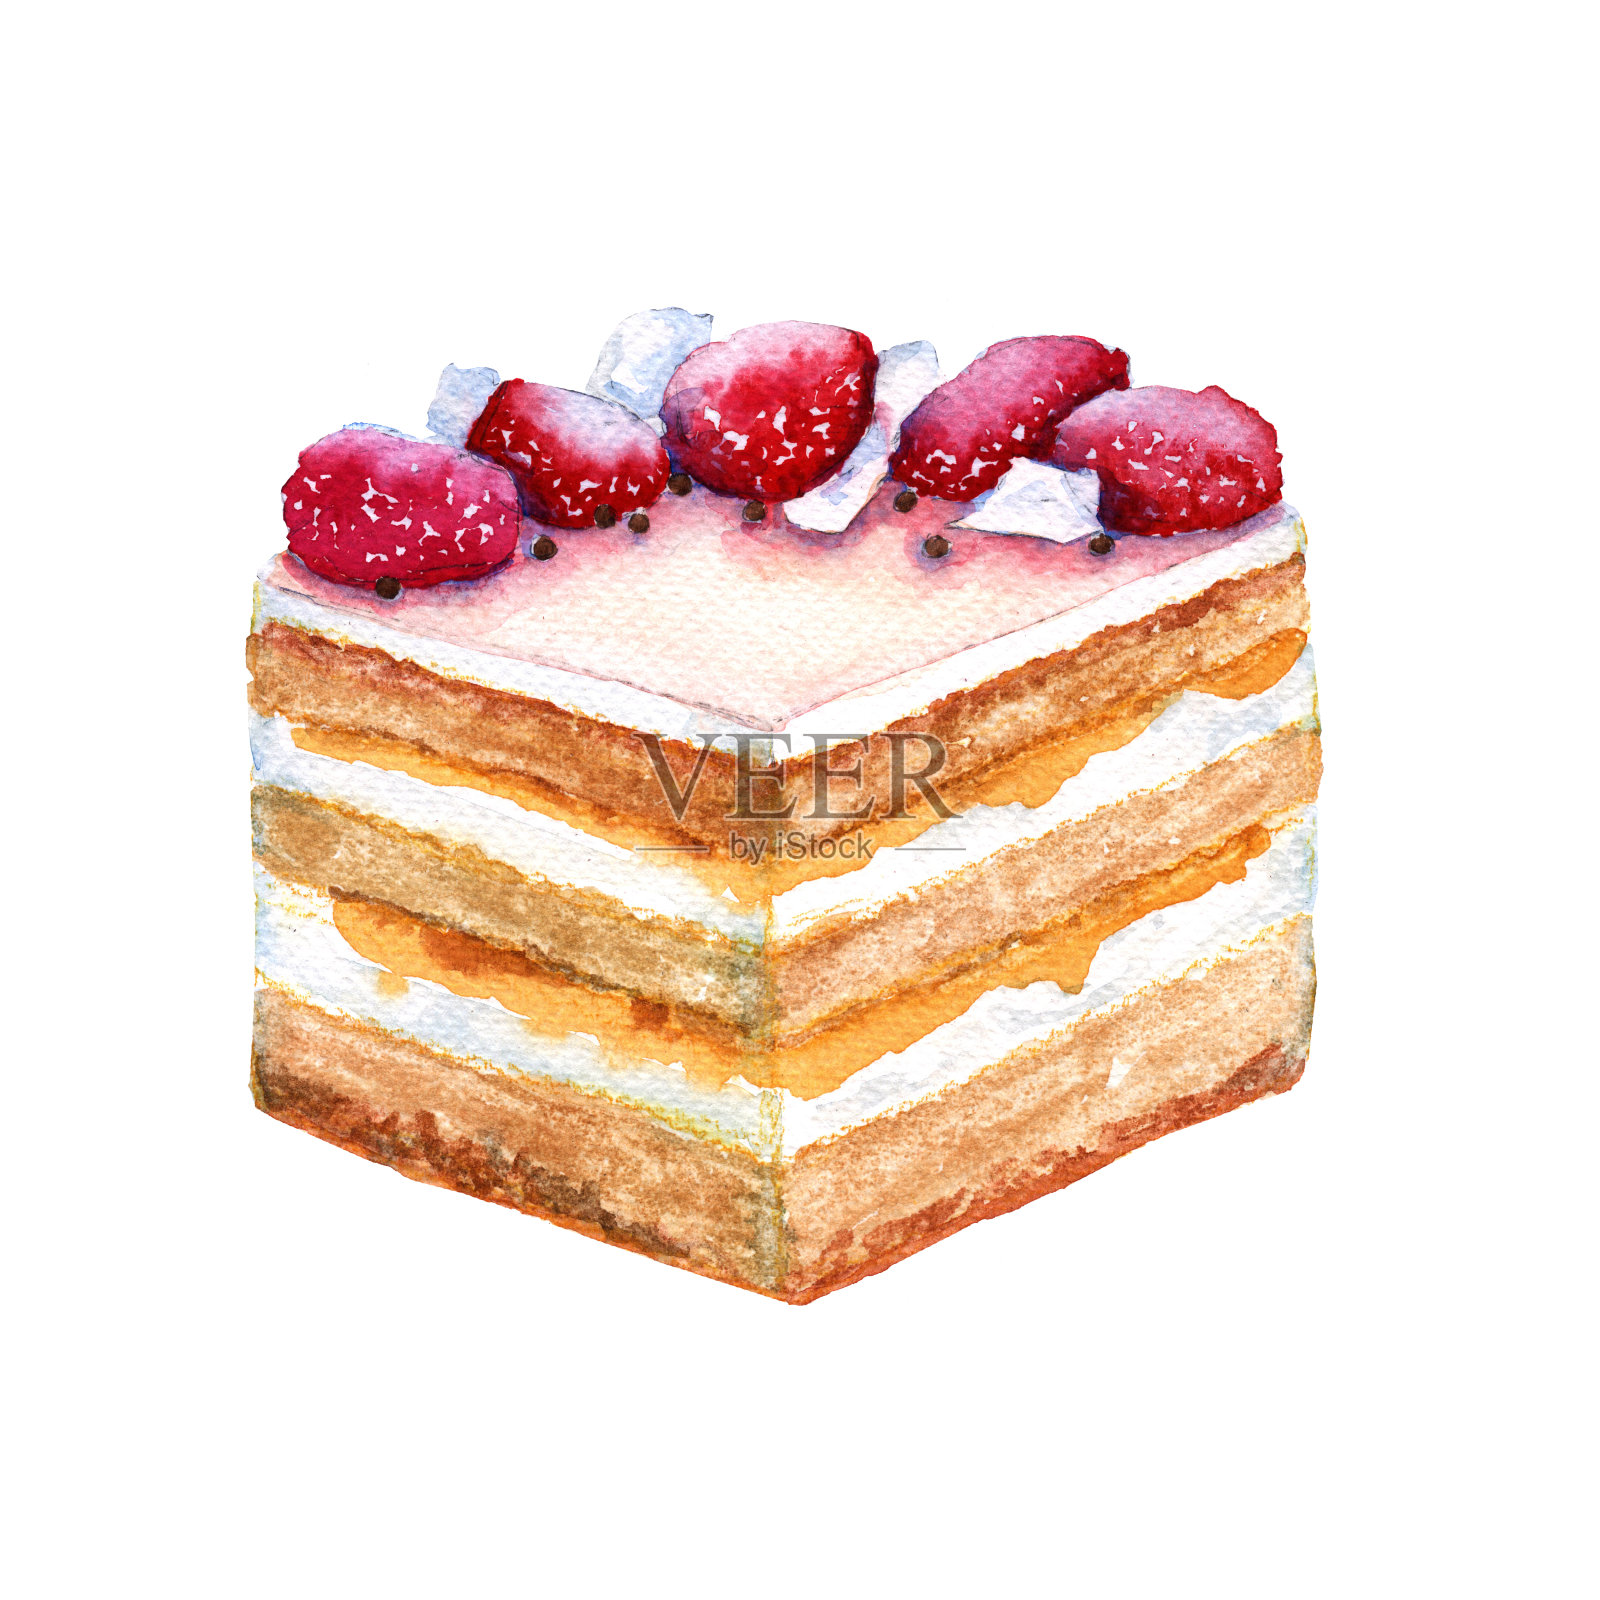 配上草莓饼干蛋糕。孤立在白色背景上。插画图片素材